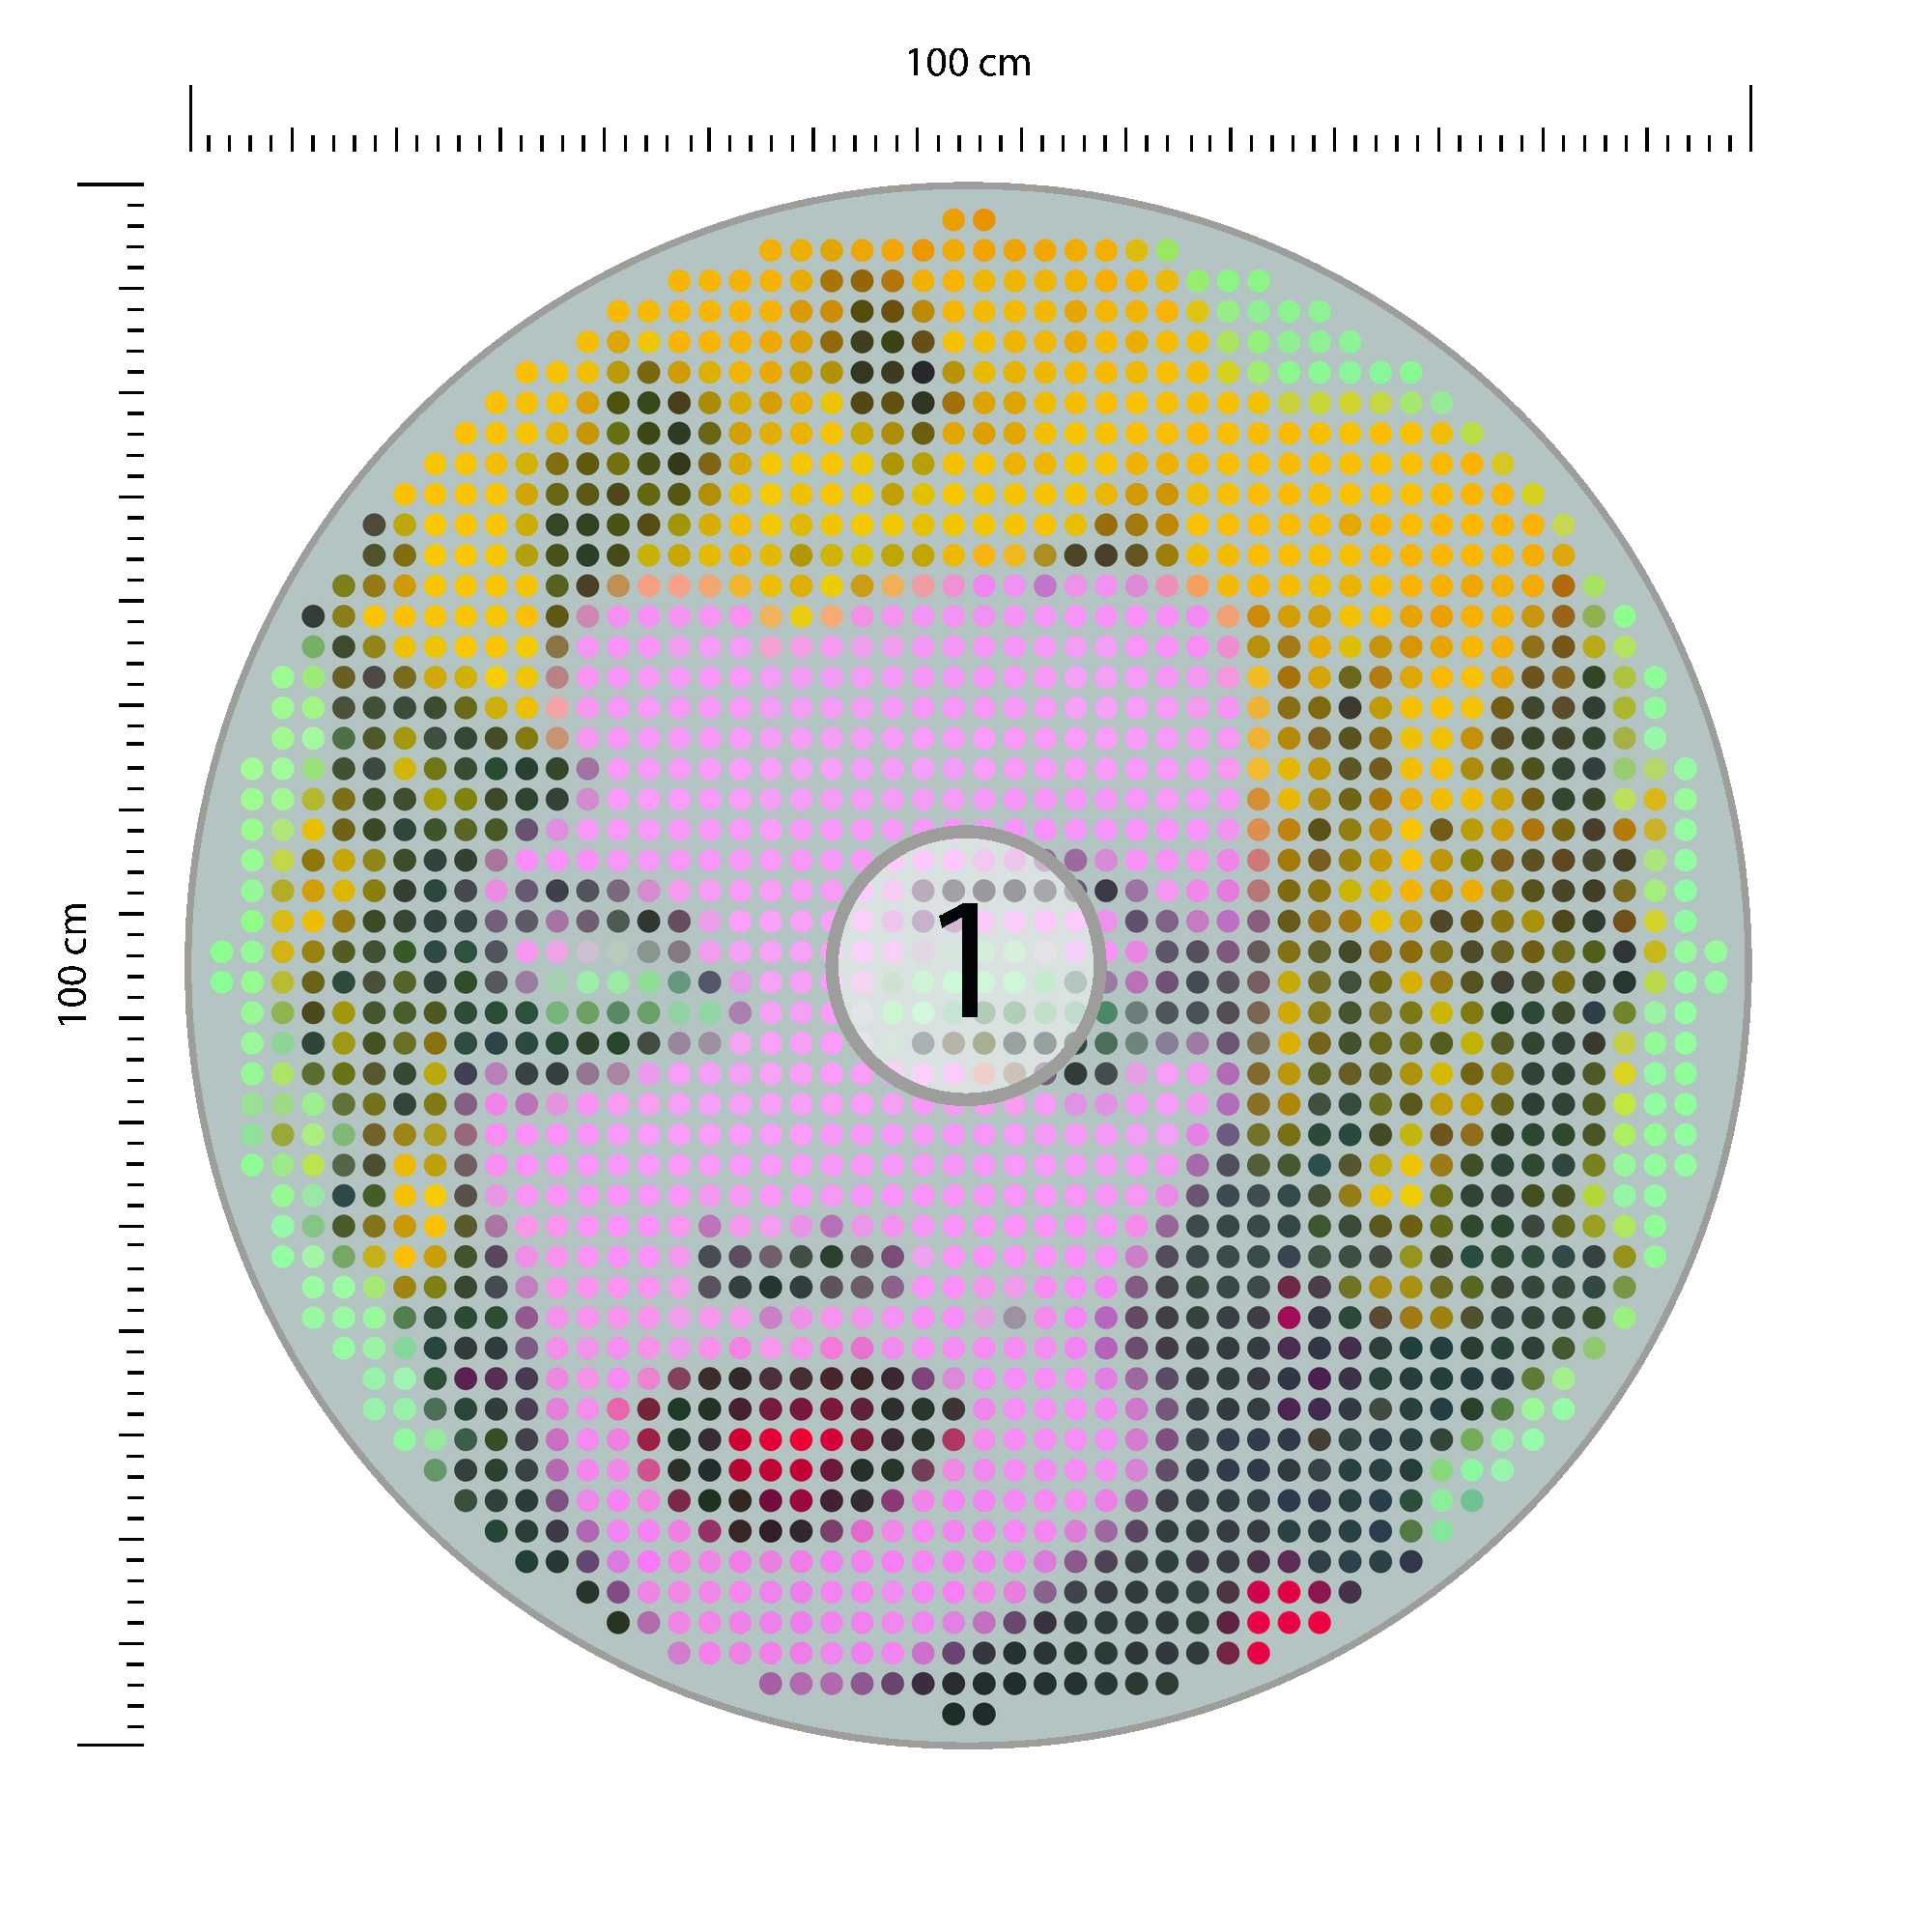 Fototapeta Okrągła Ikona Marilyn 100x100cm